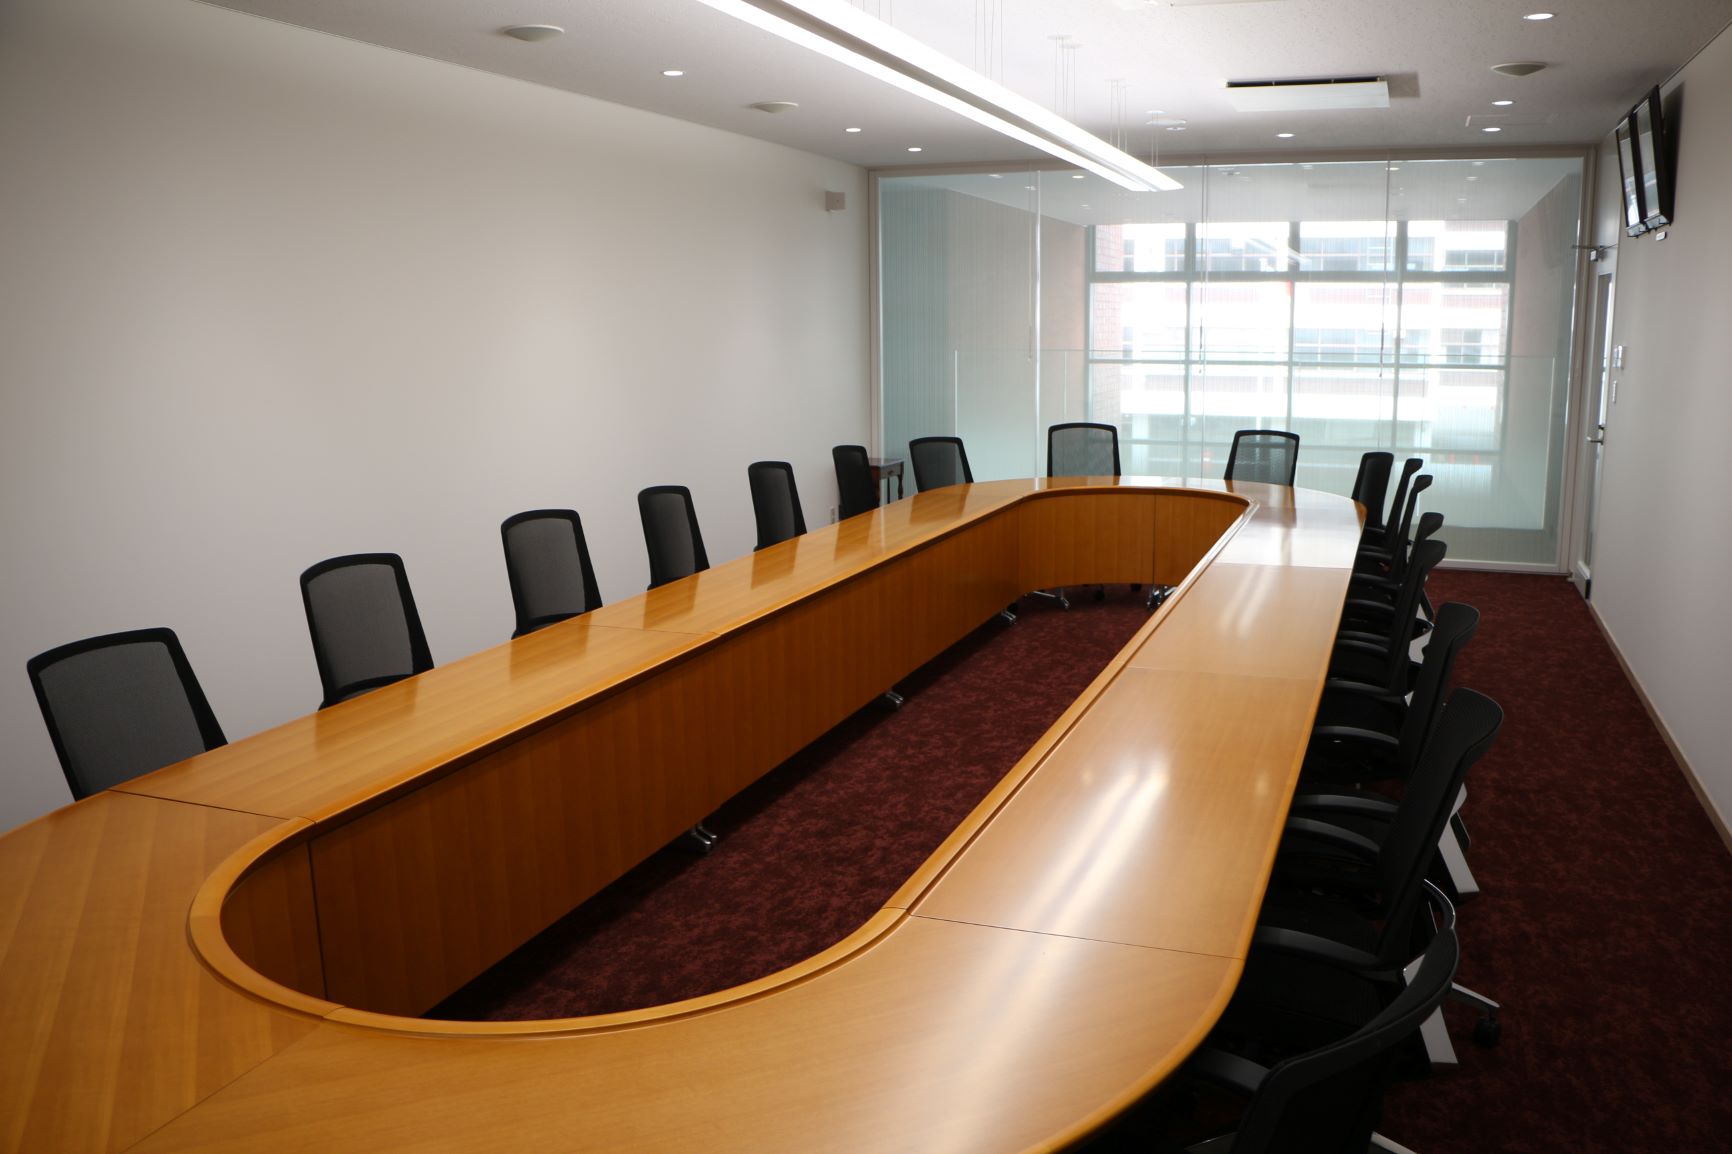 奥にすりガラス状の壁、手前に縦に長いO字型の木製のテーブルに黒色の椅子が設置されている庁議・来賓室の写真